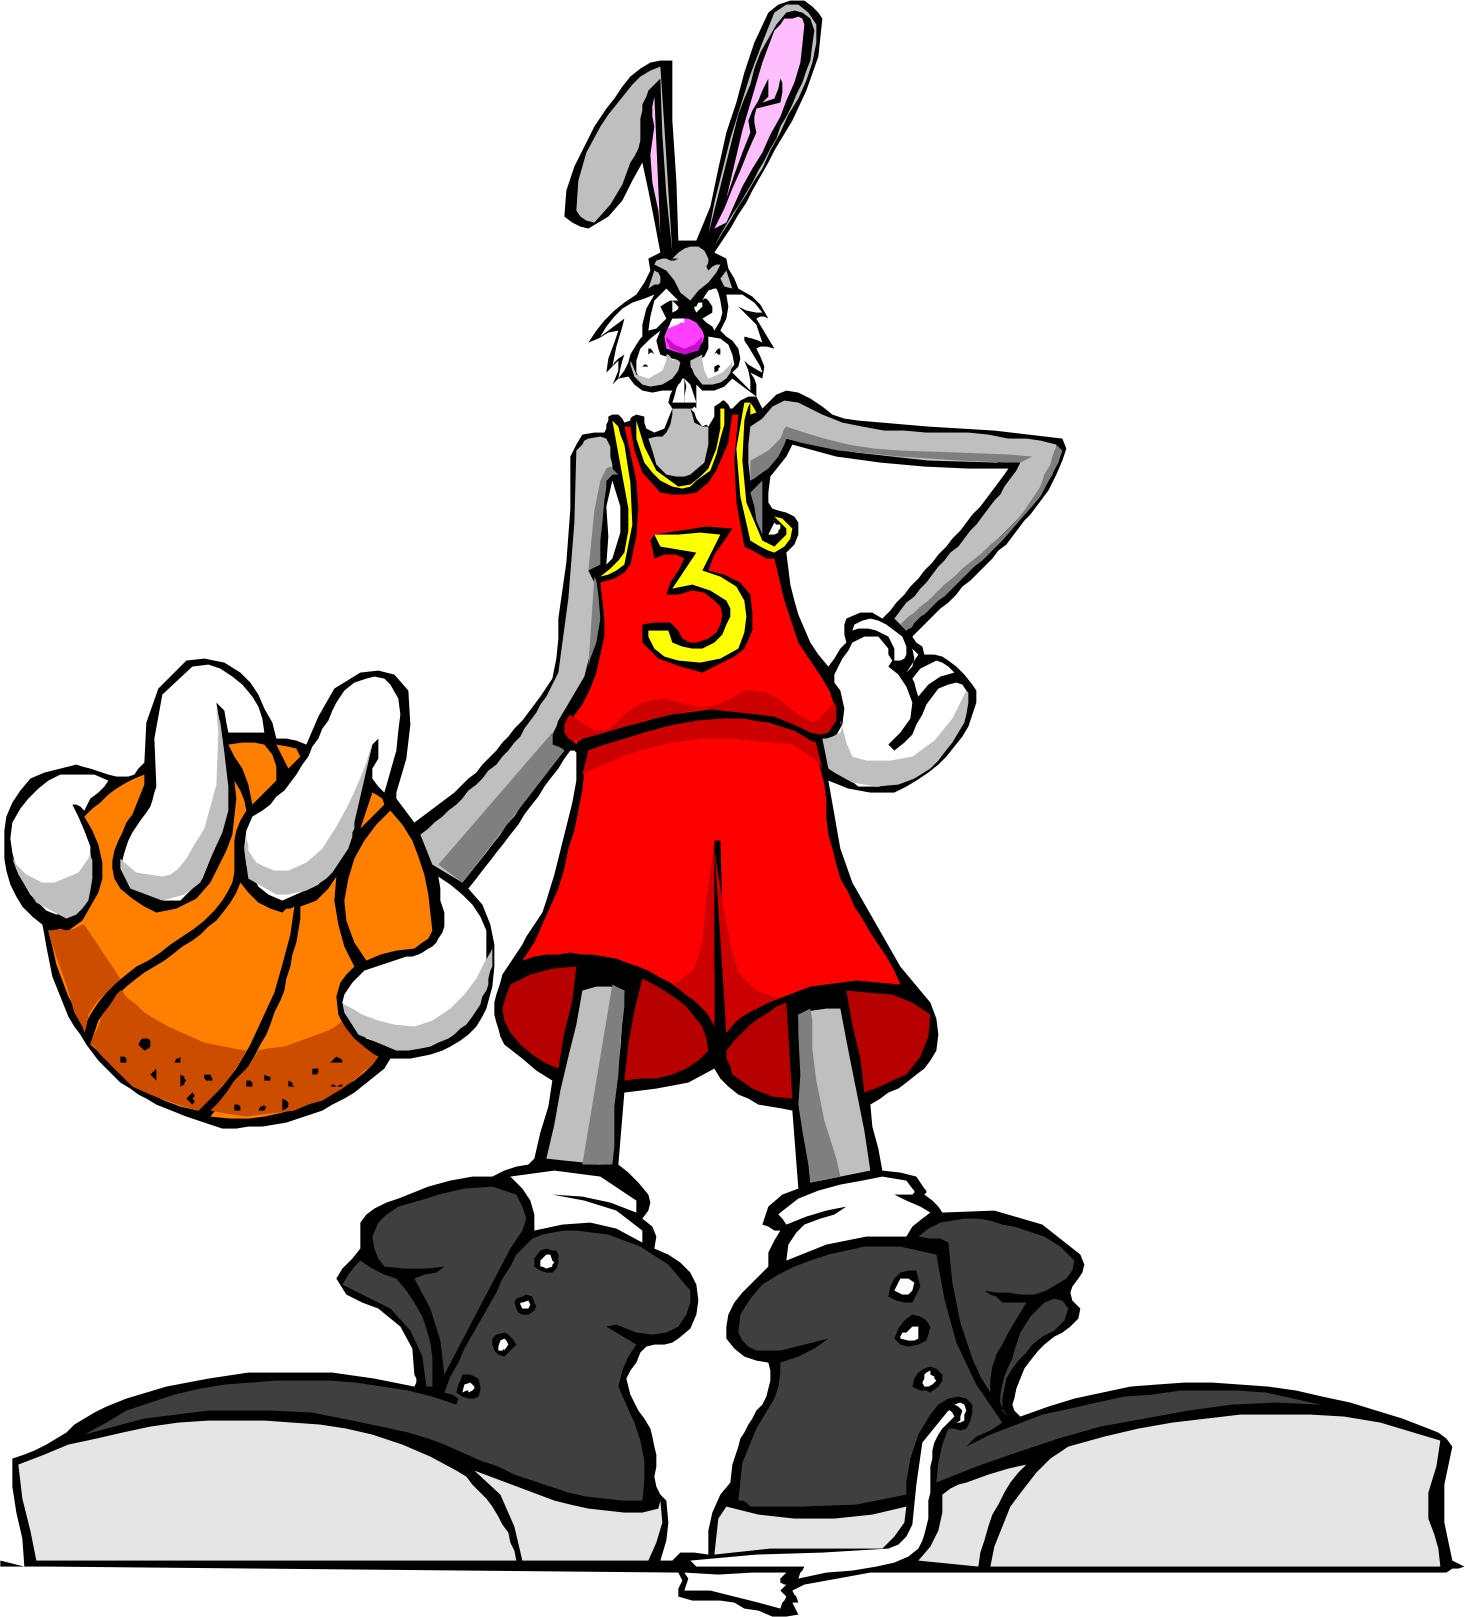 Basketball Cartoon Images - ClipArt Best